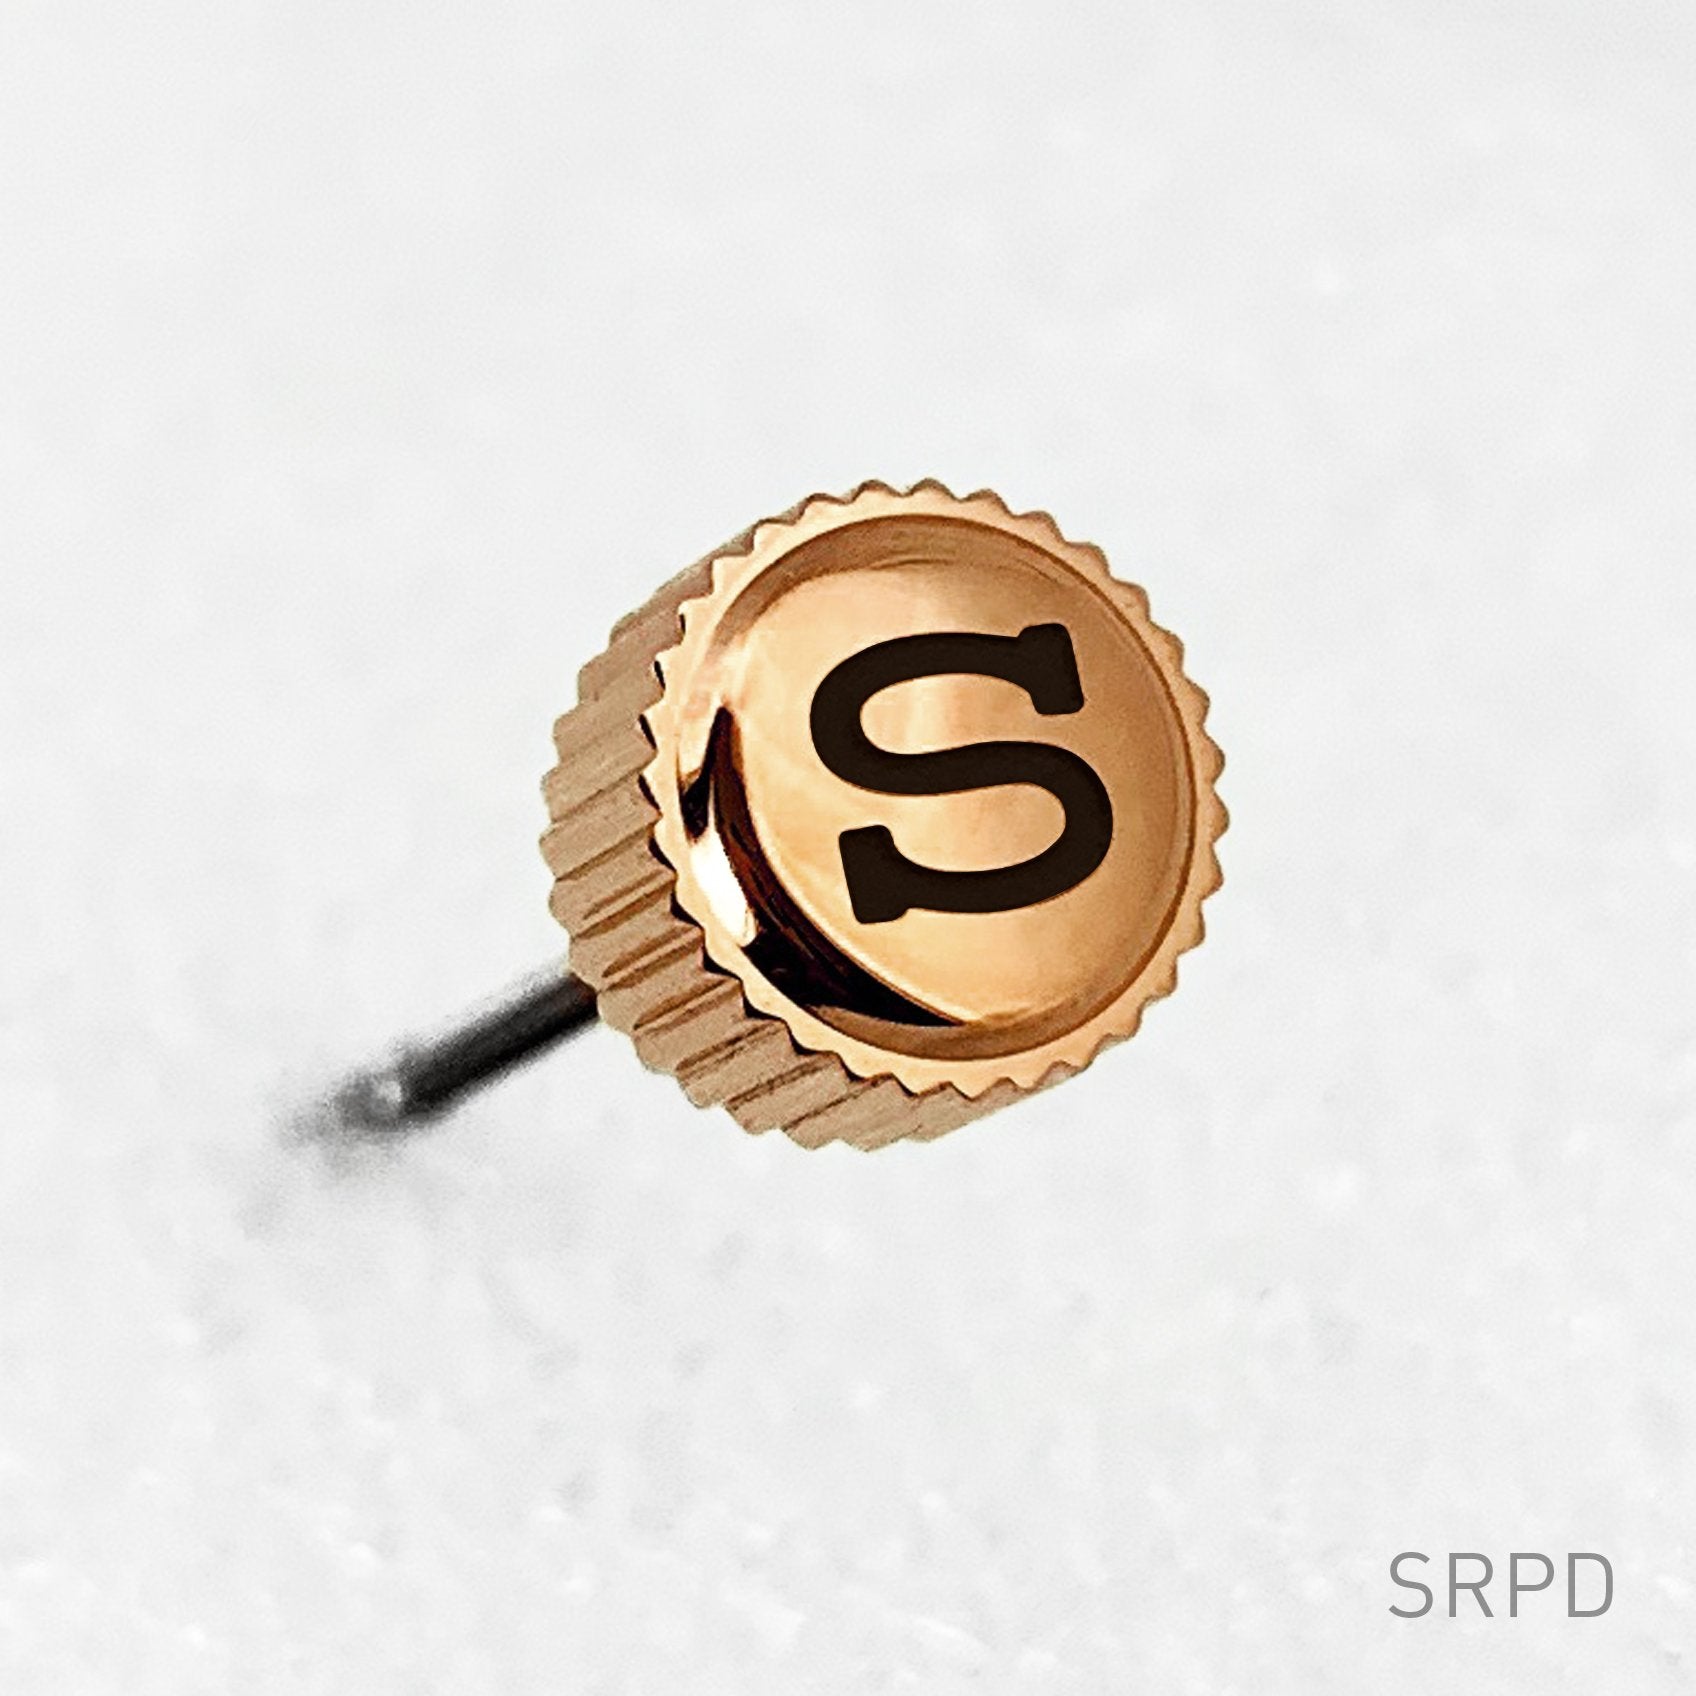 Crown - SRPD - Polished PVD Rose Gold - Black "S"